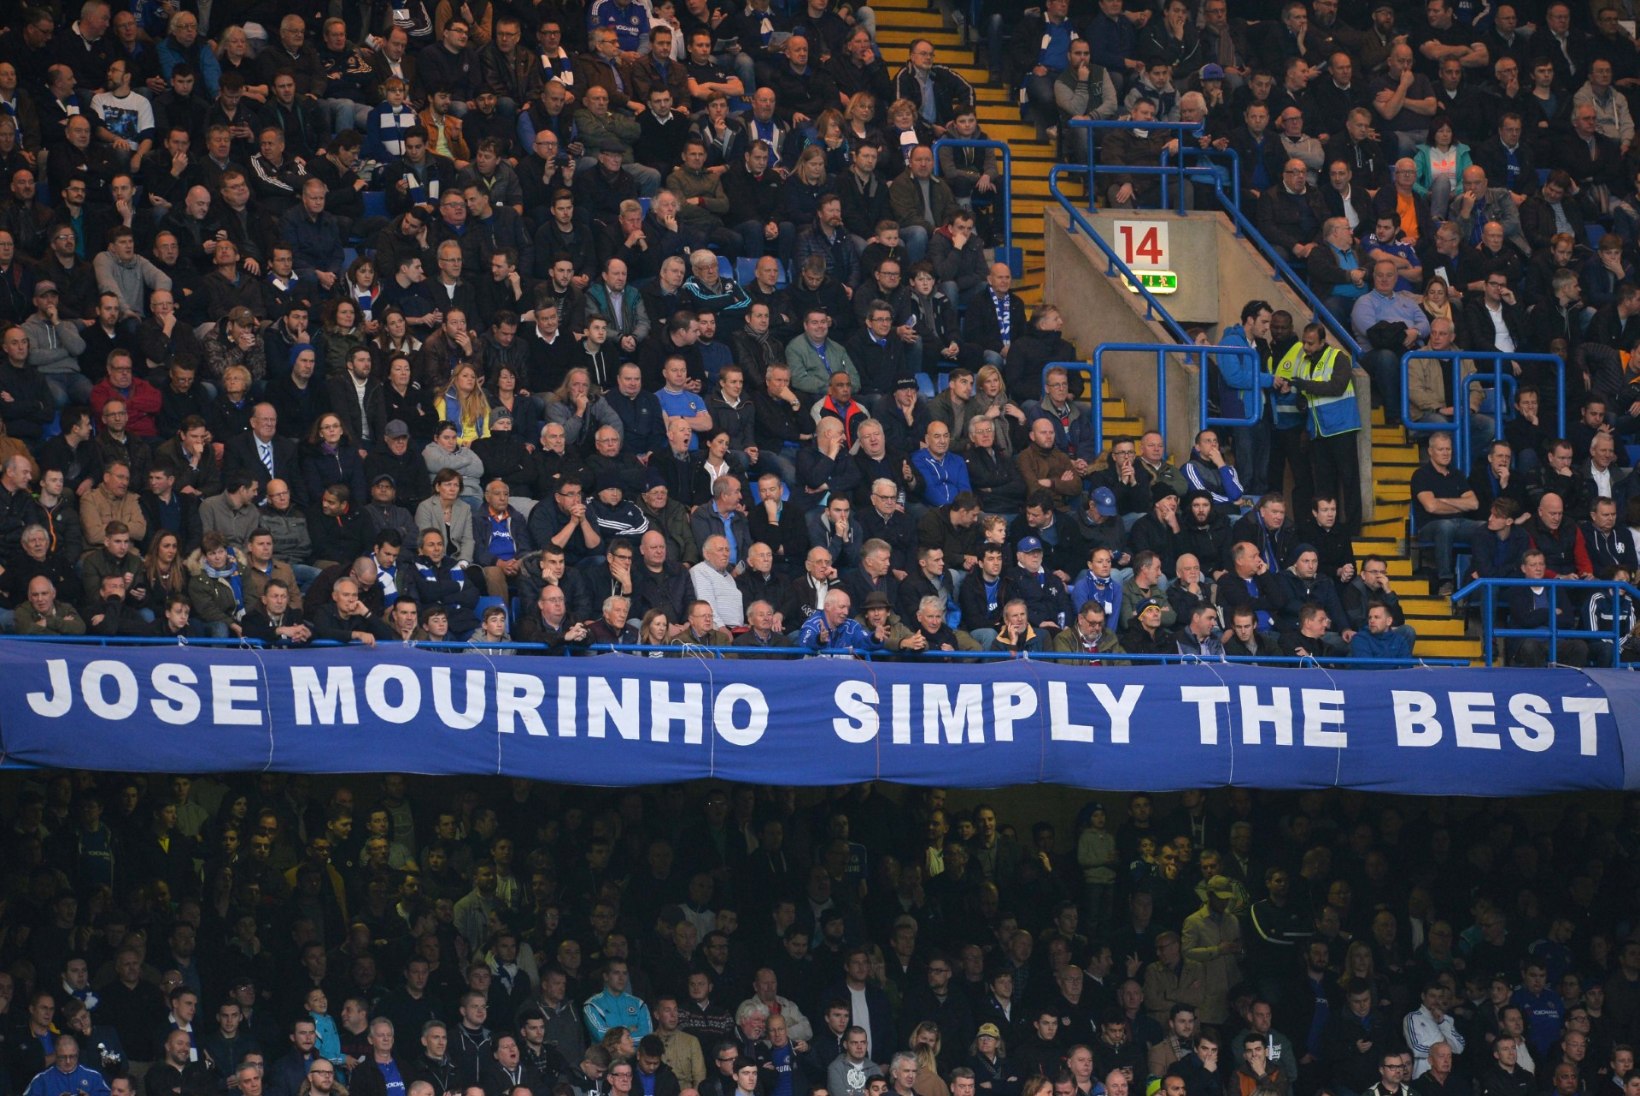 FOTOD | Chelsea fännid avaldasid vallandatud Mourinhole toetust ja sõimasid mängijaid